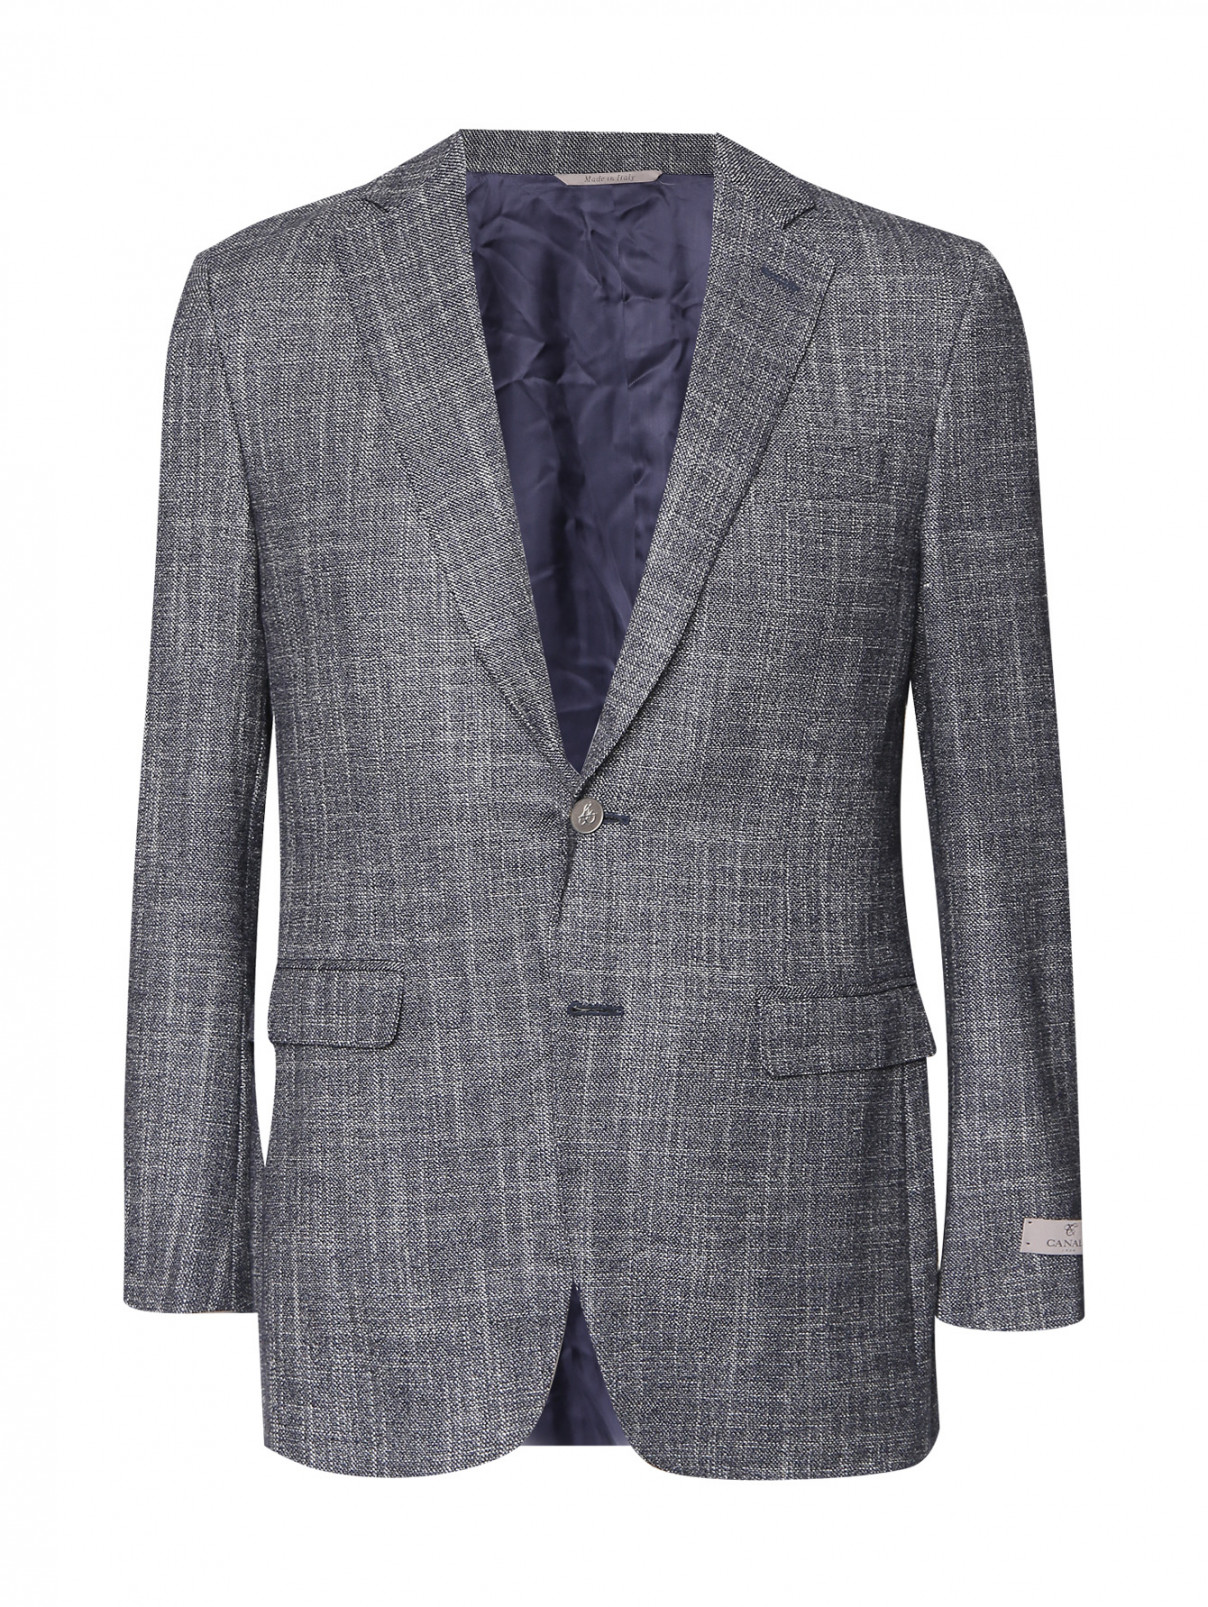 Пиджак из шерсти и шелка с узором Canali  –  Общий вид  – Цвет:  Синий